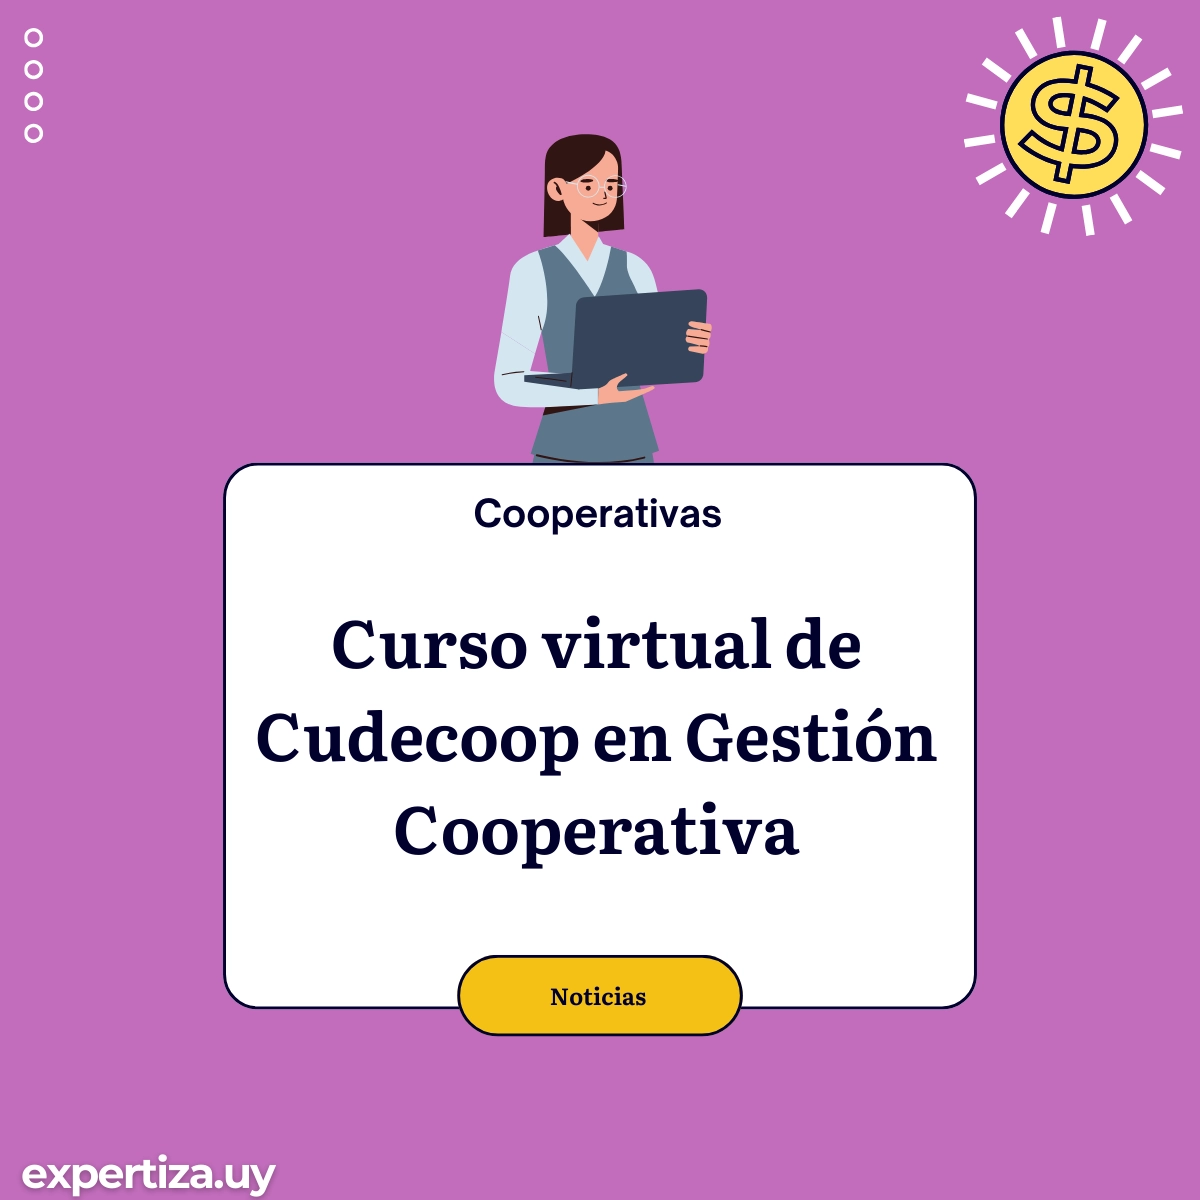 Curso virtual de Cudecoop en Gestión Cooperativa.